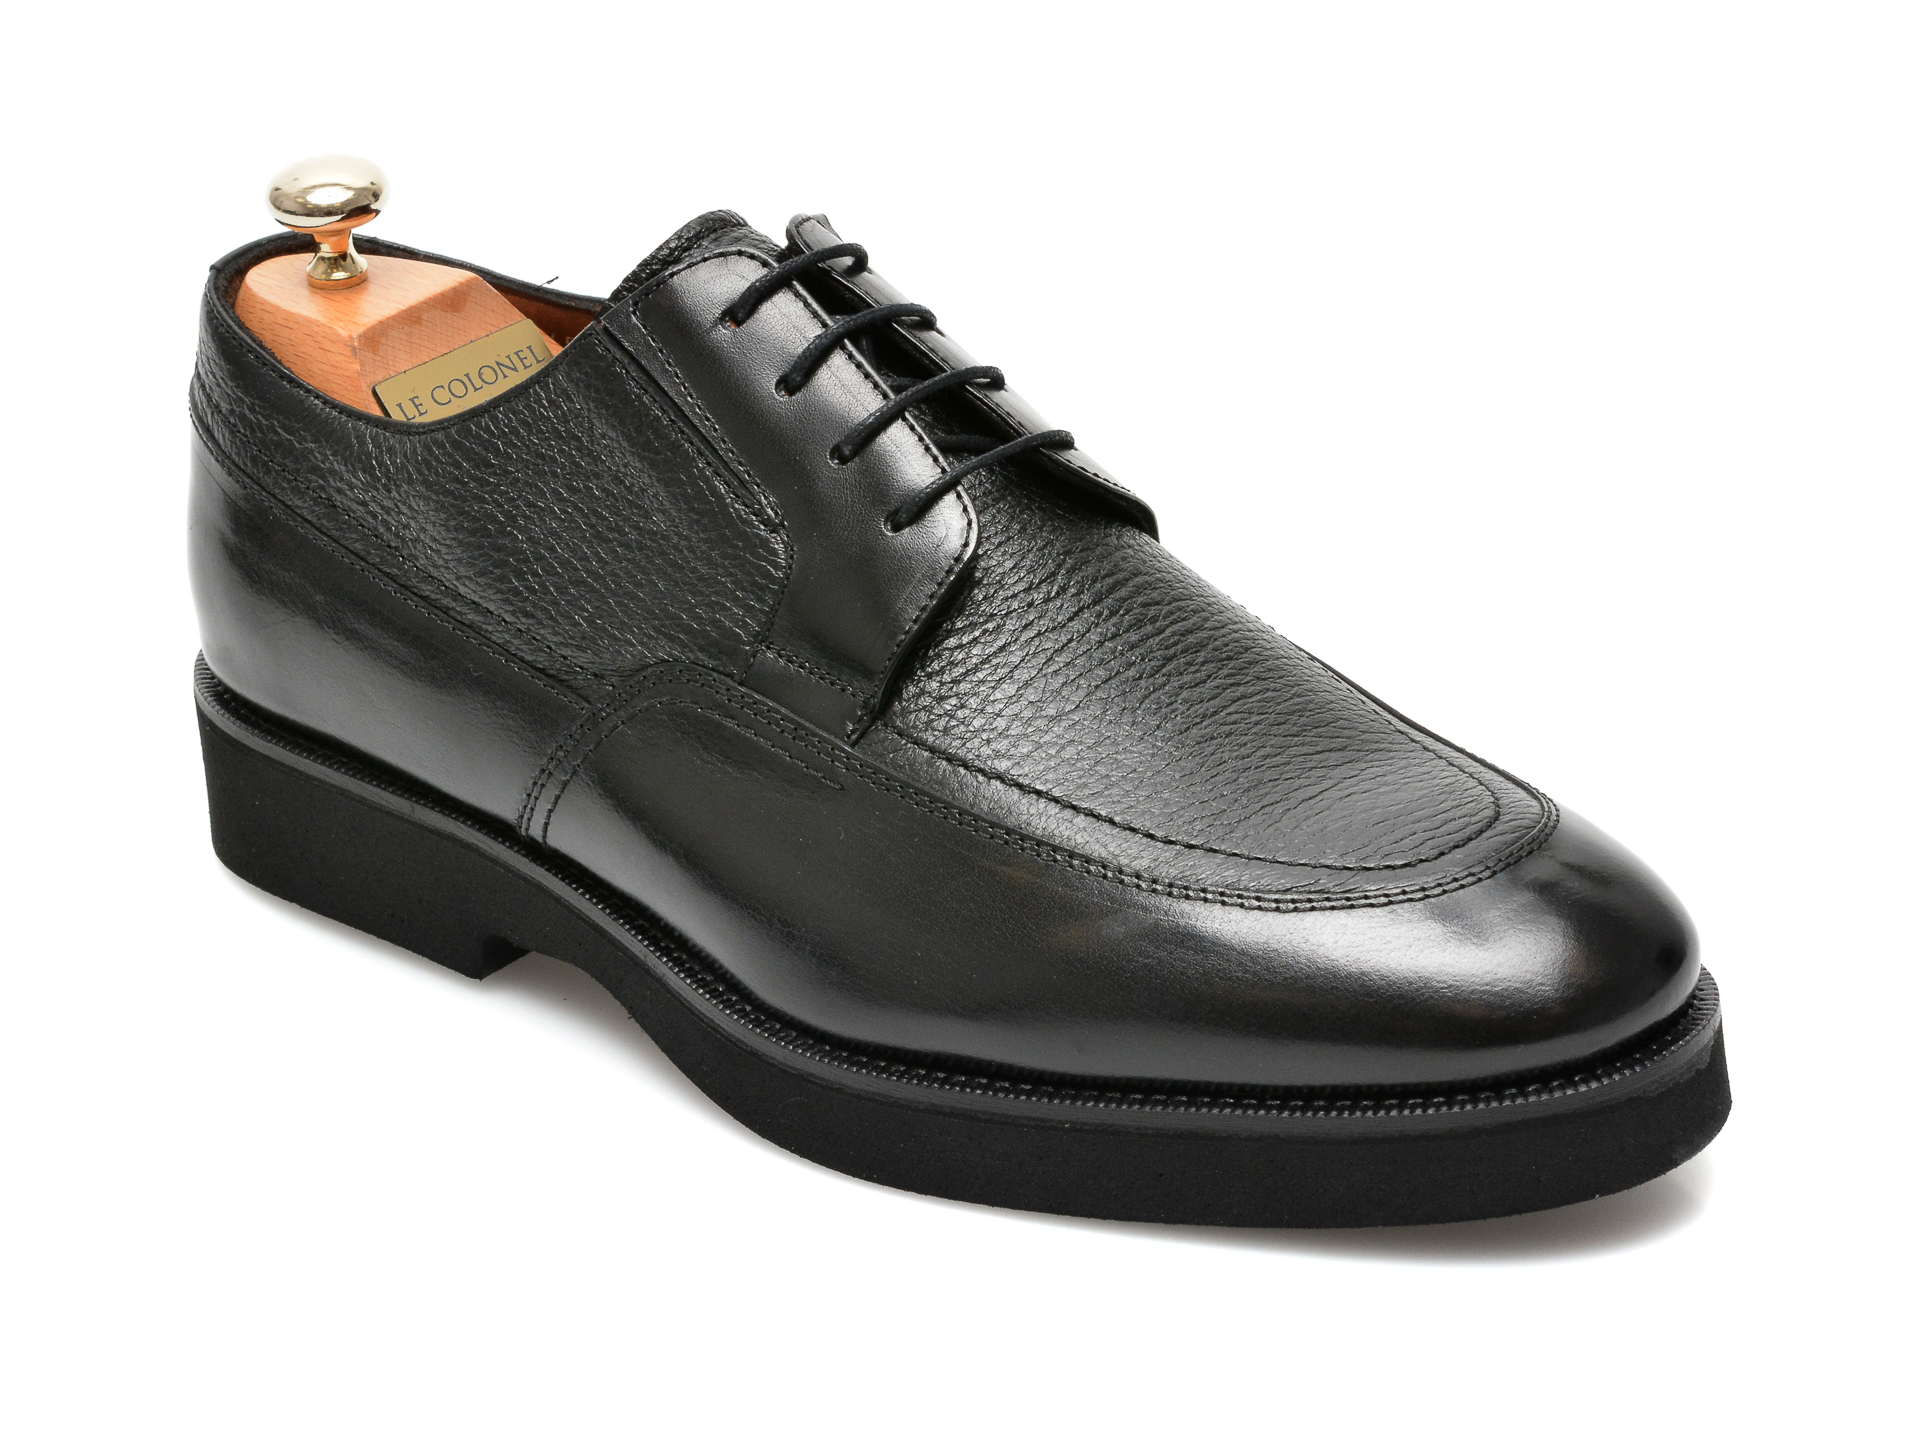 Pantofi LE COLONEL negri, 43452, din piele naturala Le Colonel